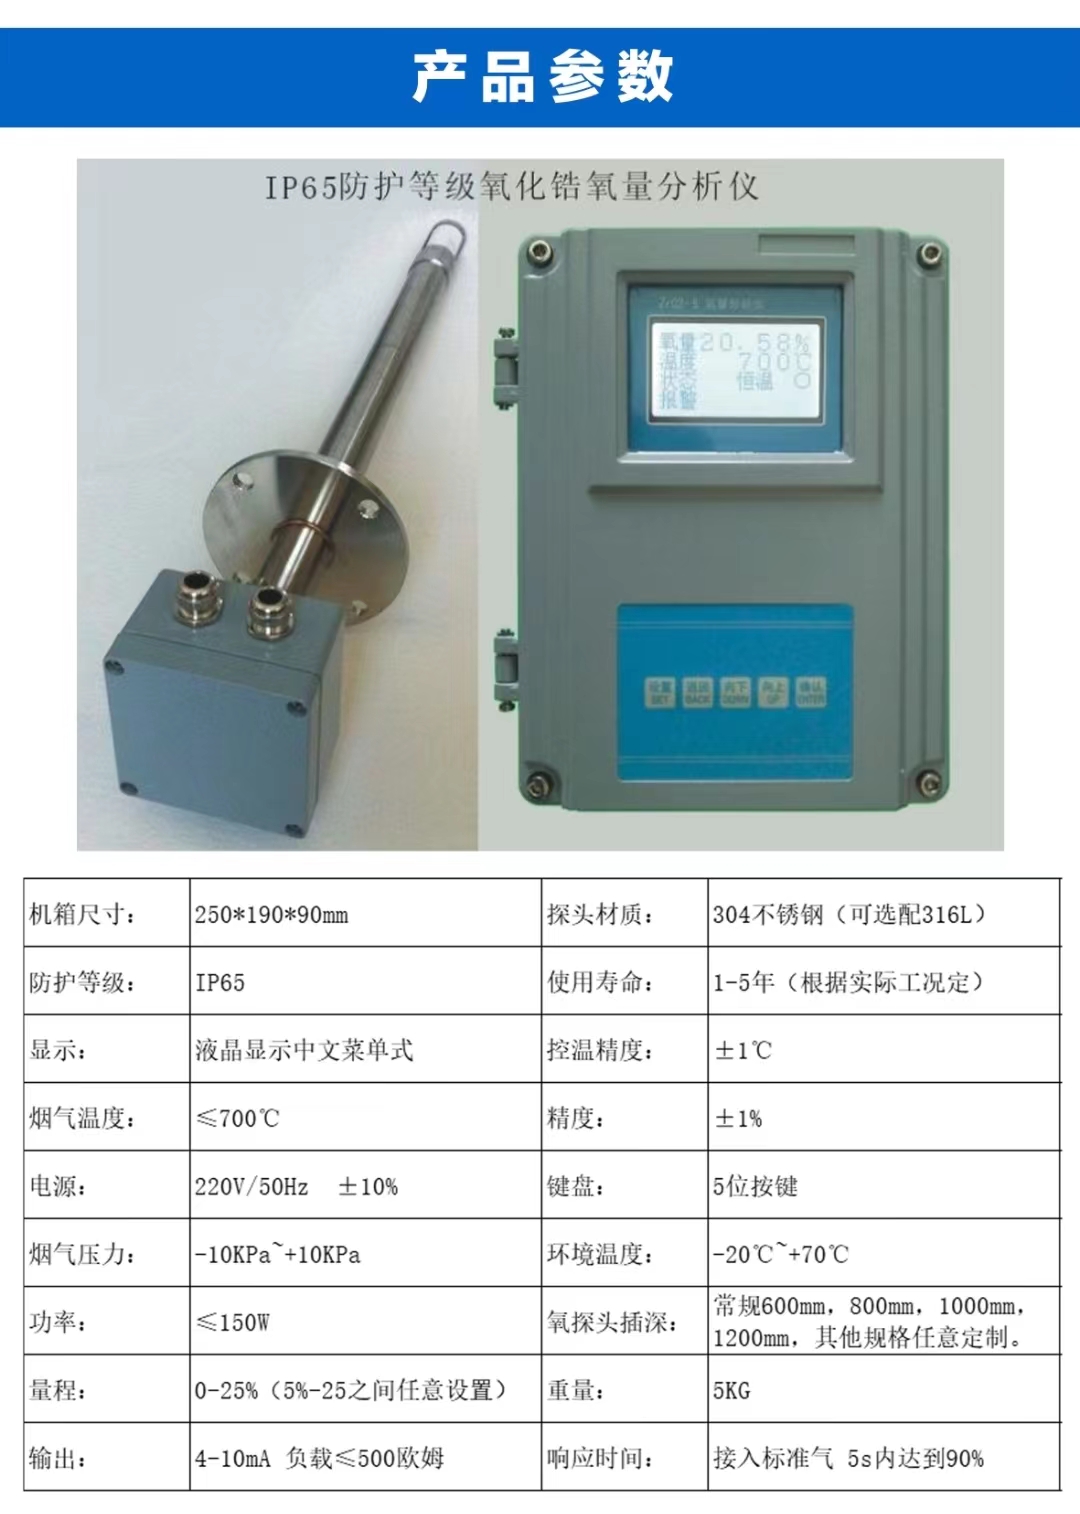 Zirconia oxygen analyzer, boiler flue gas oxygen analyzer, manufacturer provides complete specifications